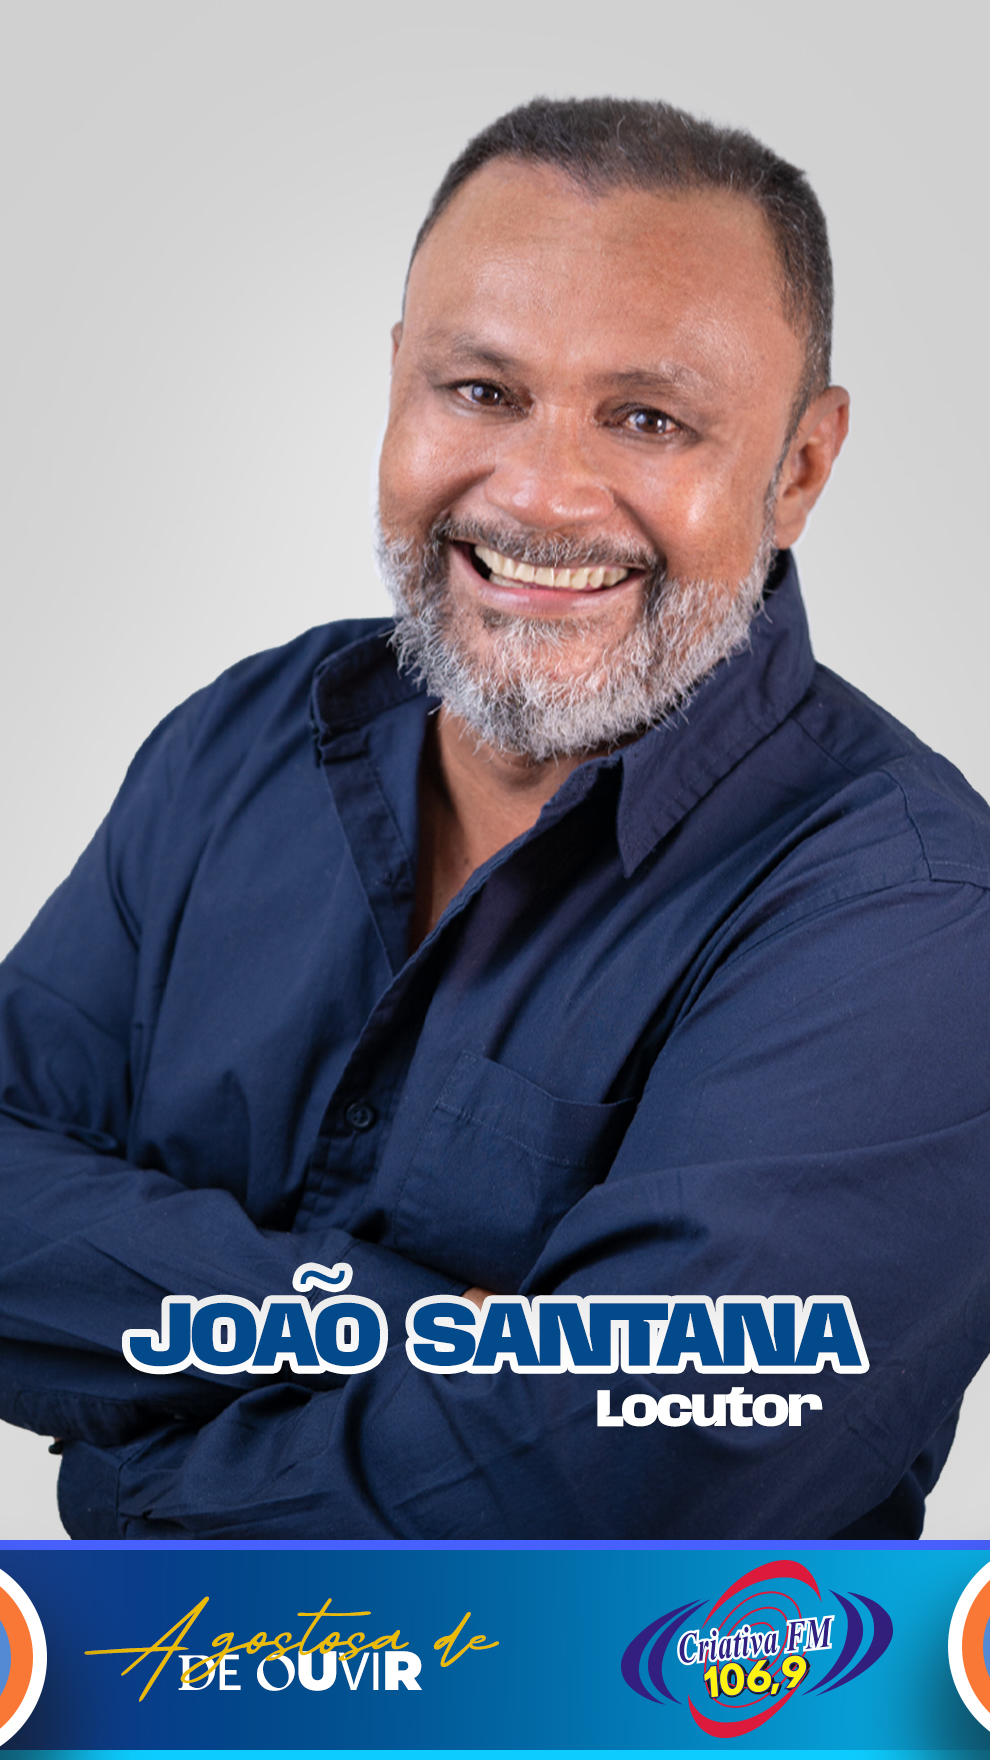 JOÃO SANTANA